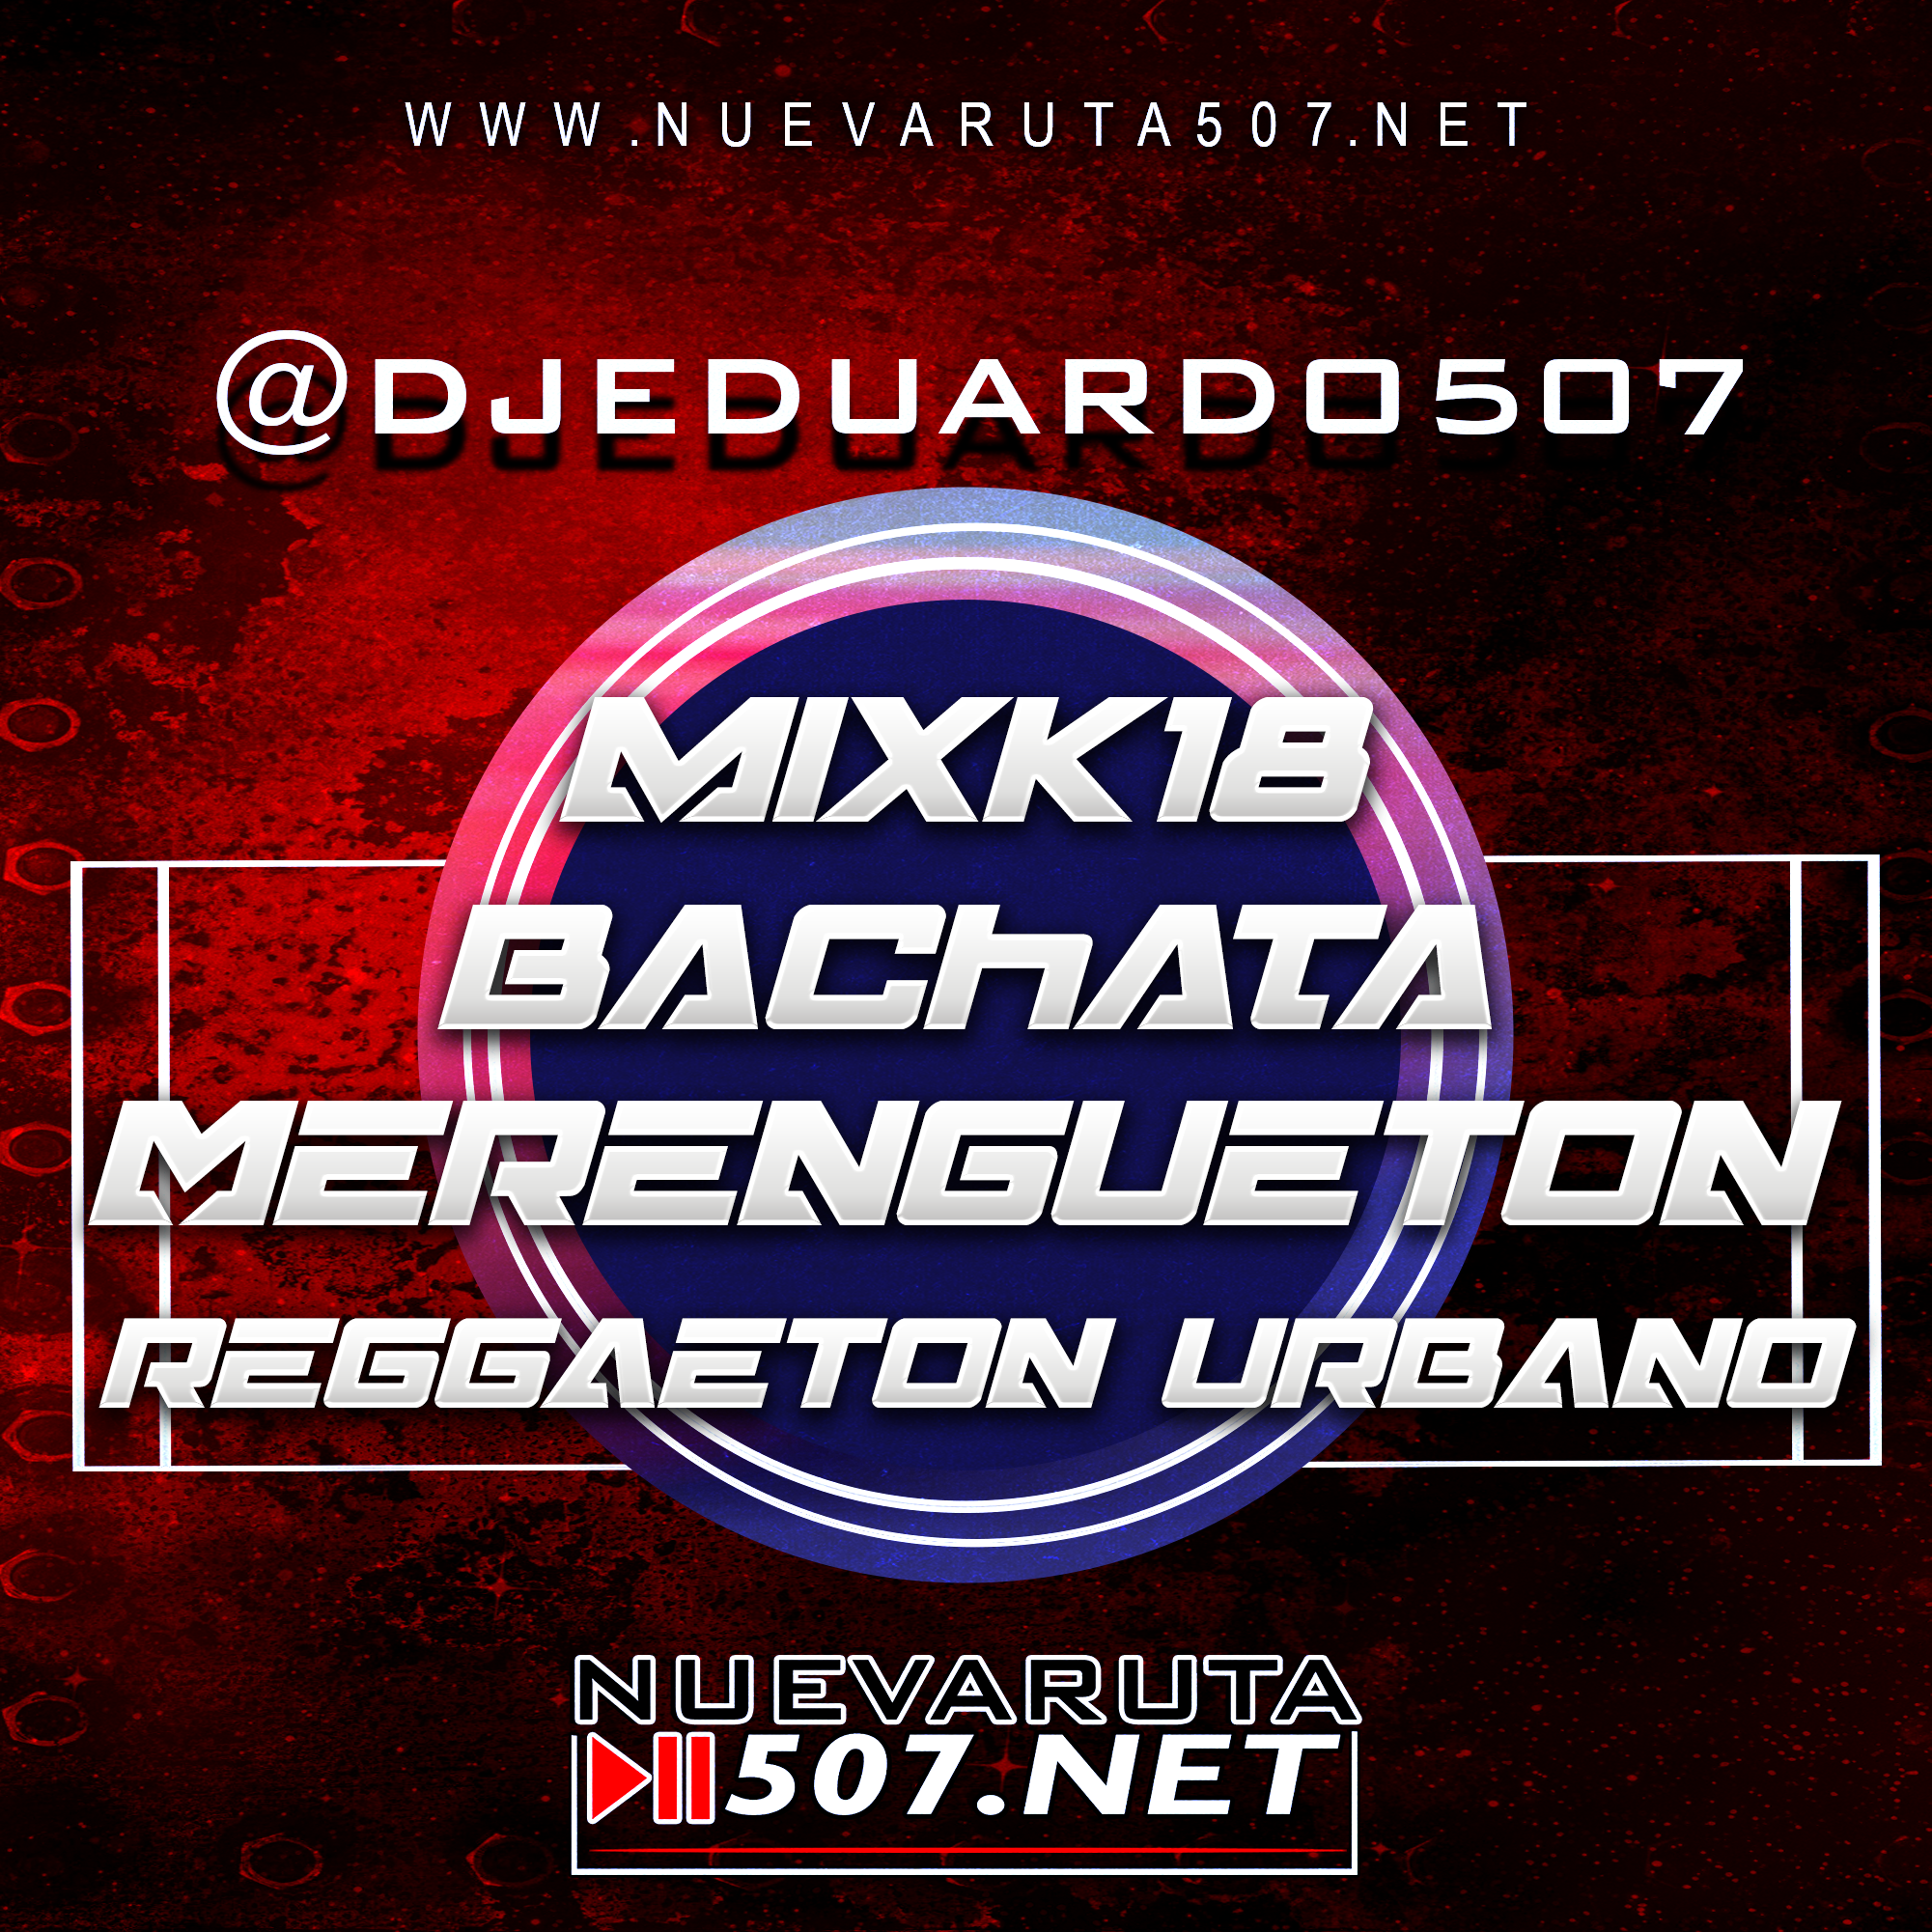 Dj Eduardo507 - Bachata Mixxx.mp3